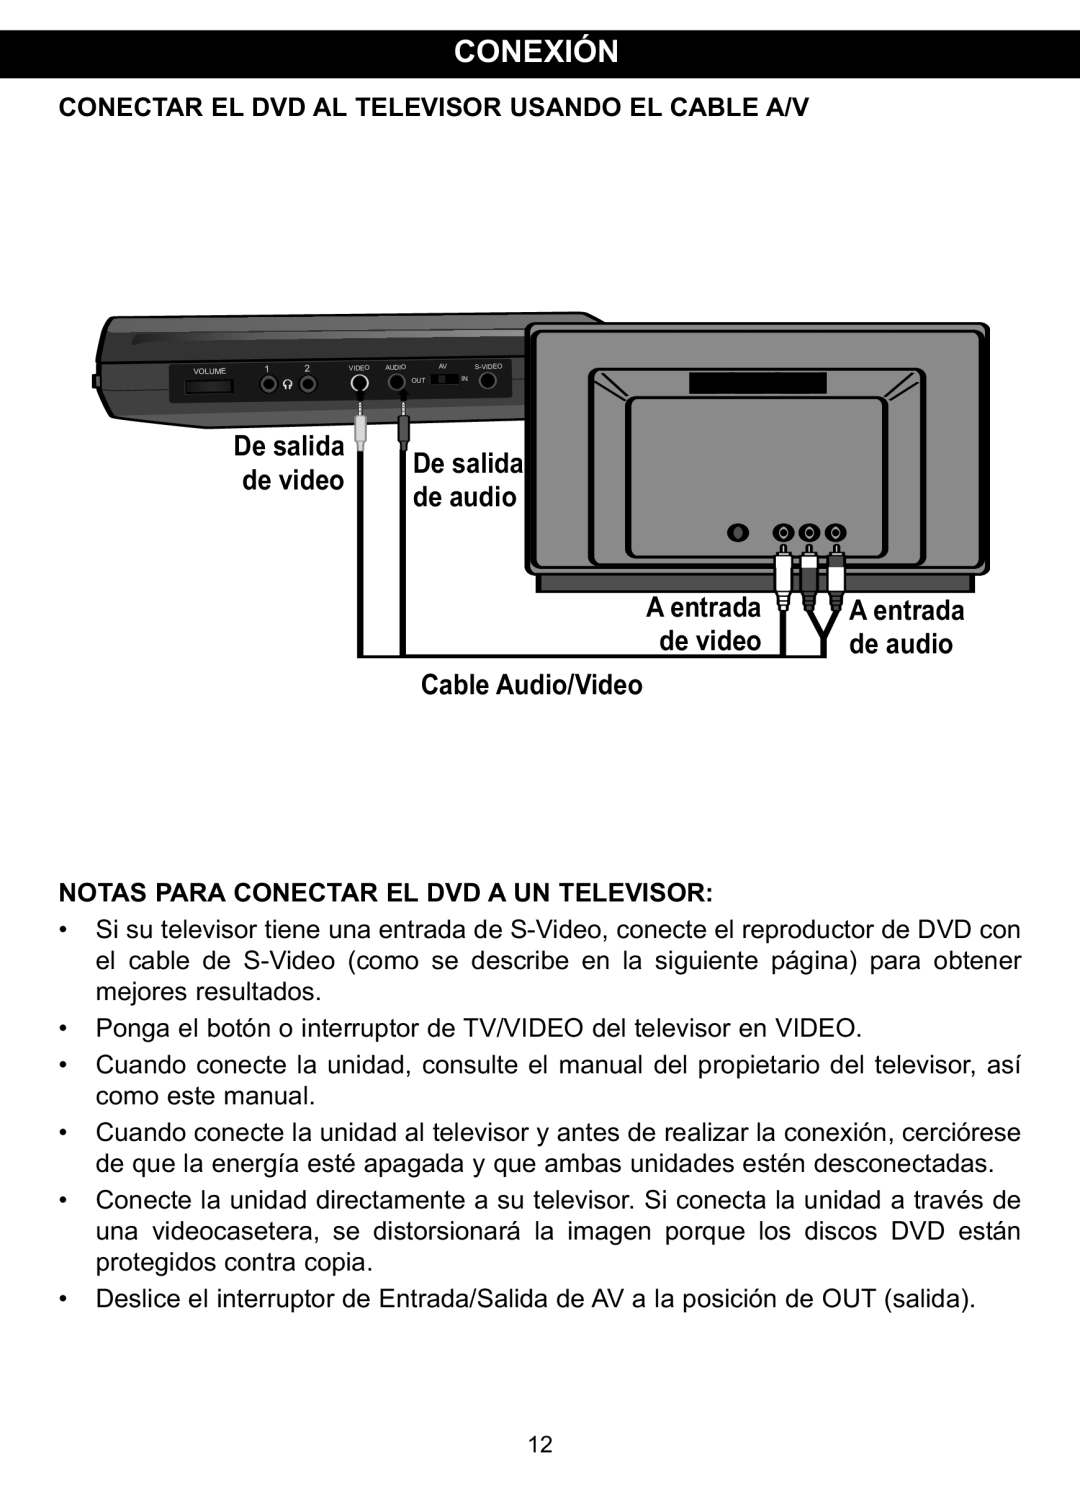 Memorex MVDP1088 manual Conexión, Conectar El Dvd Al Televisor Usando El Cable A/V, De salida de video, De salida de audio 